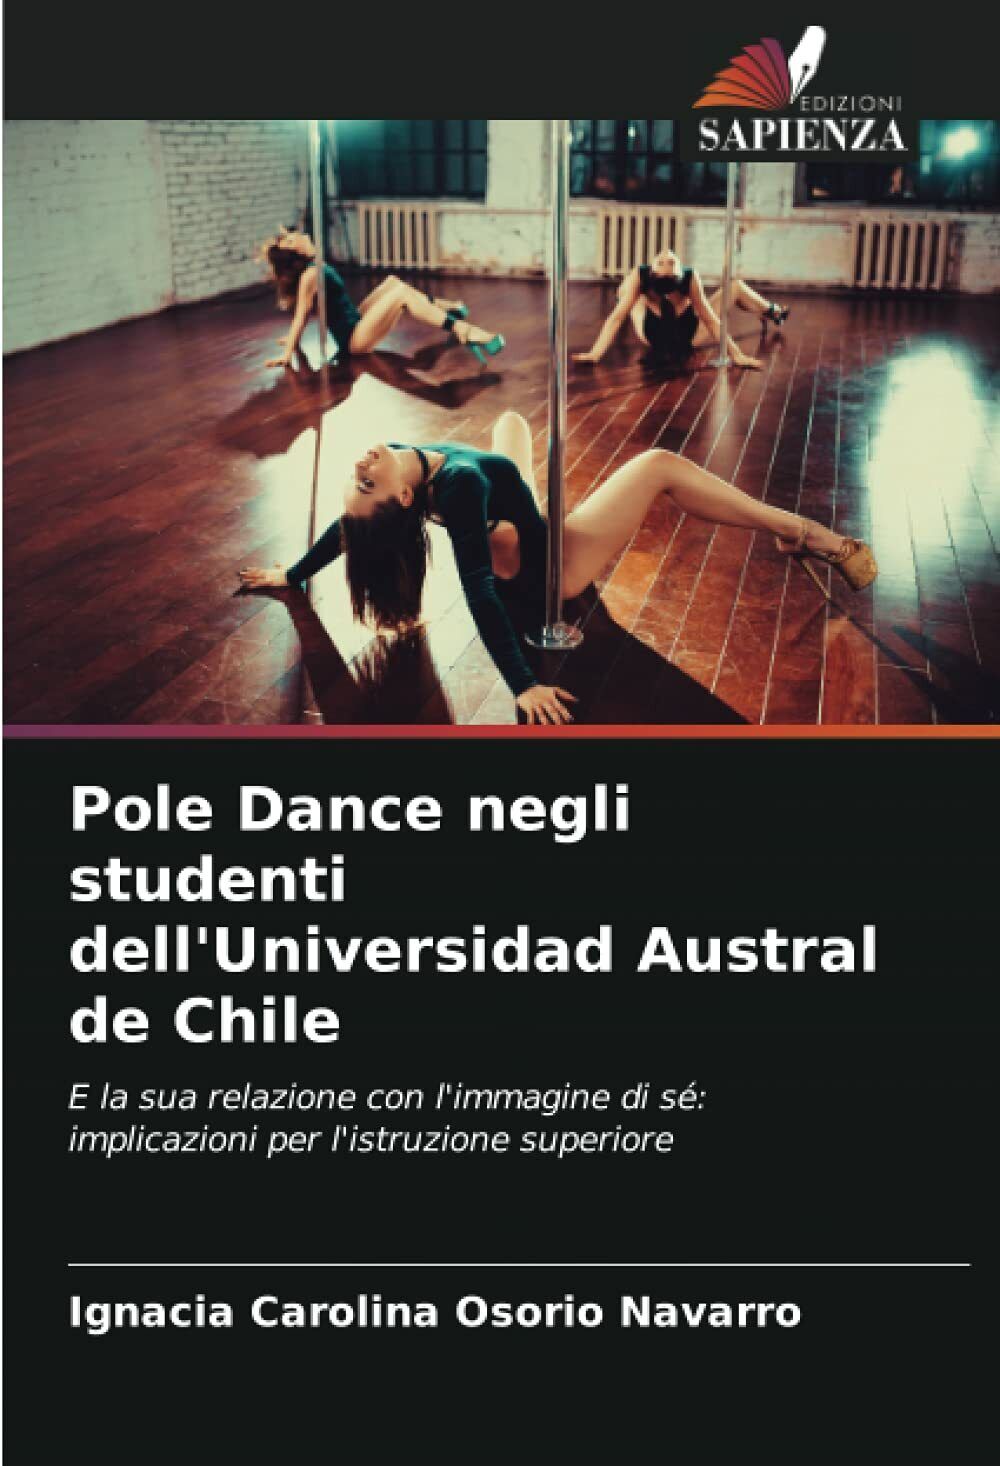 Pole Dance negli studenti dell'Universidad Austral de Chile - Navarro, 2021